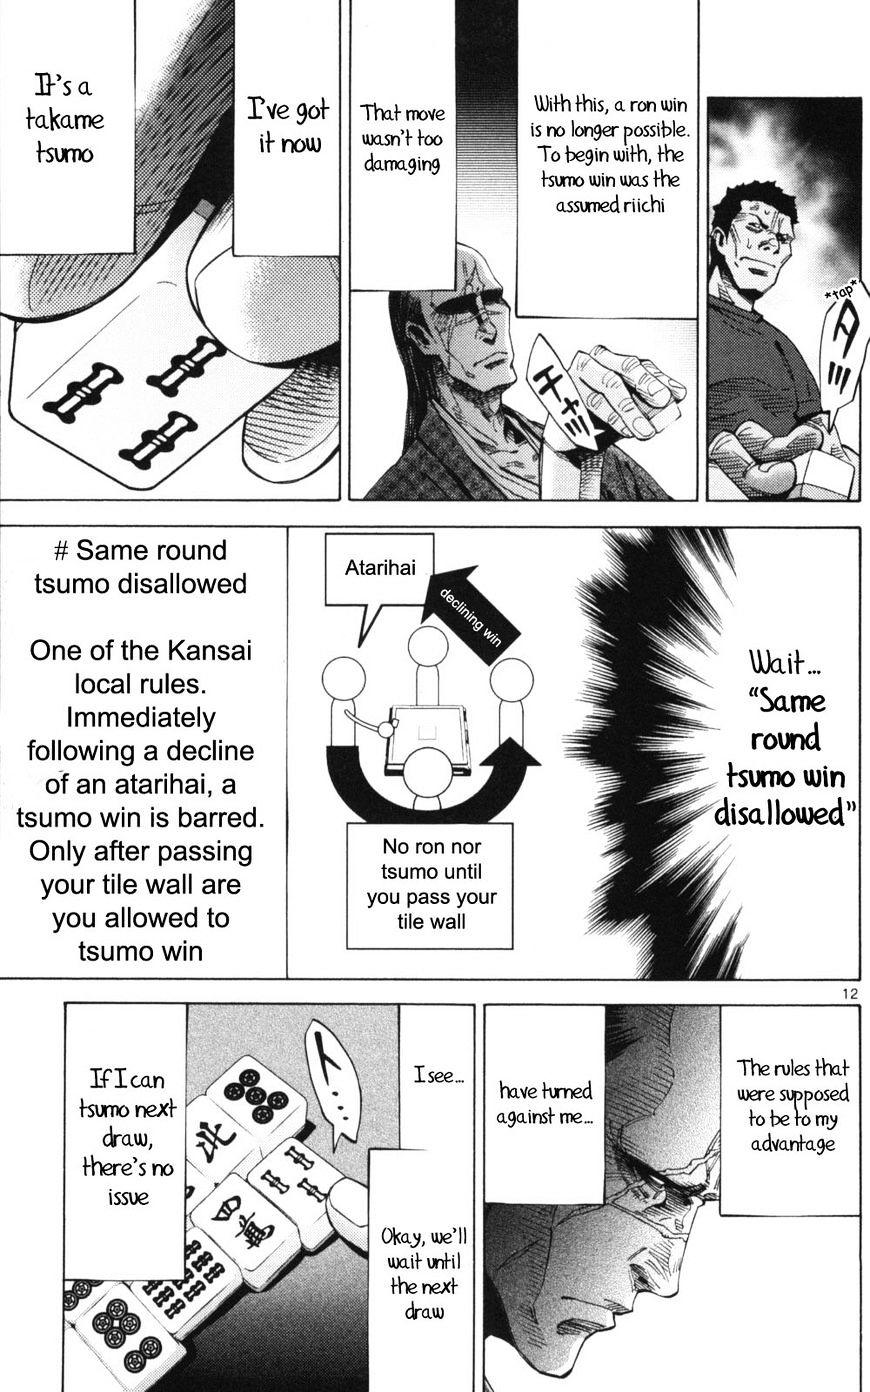 Imawa No Kuni No Alice Chapter 51.1 : Side Story 6 - King Of Diamonds (1) page 12 - Mangakakalot